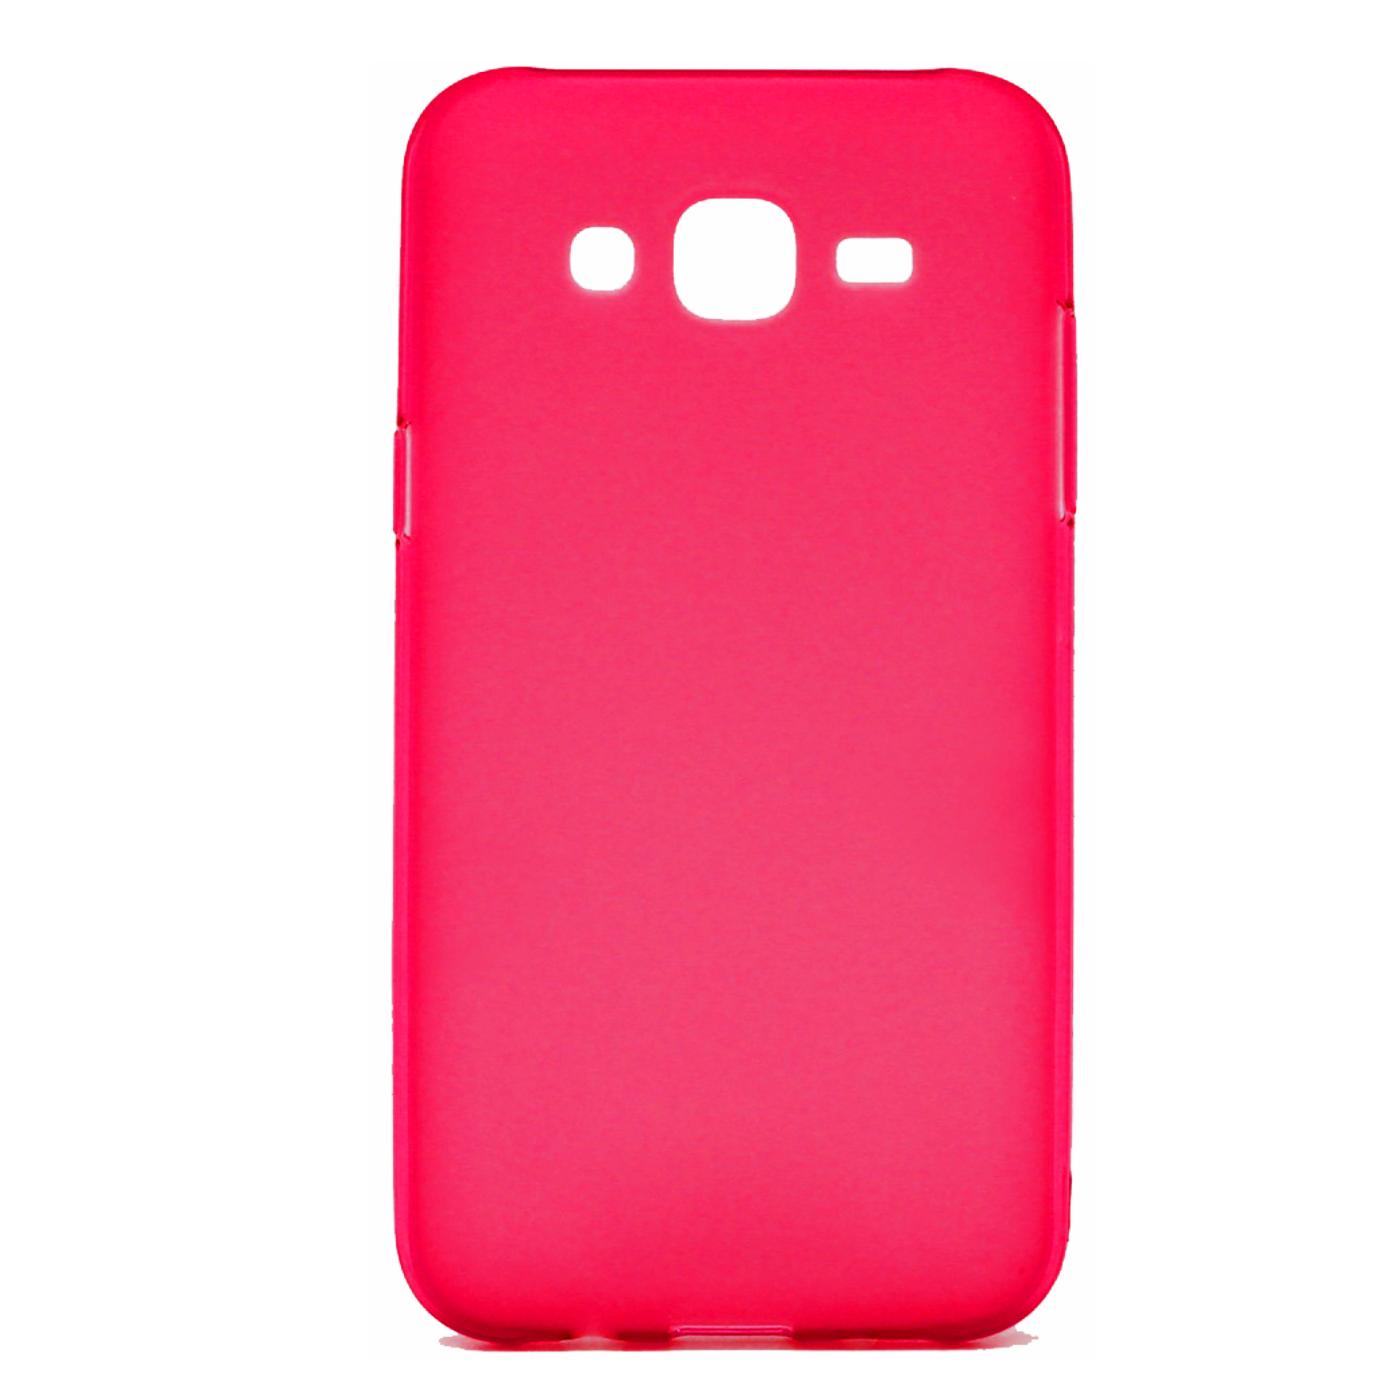 Futrola za mobitel Samsung J3 (2016), crvena